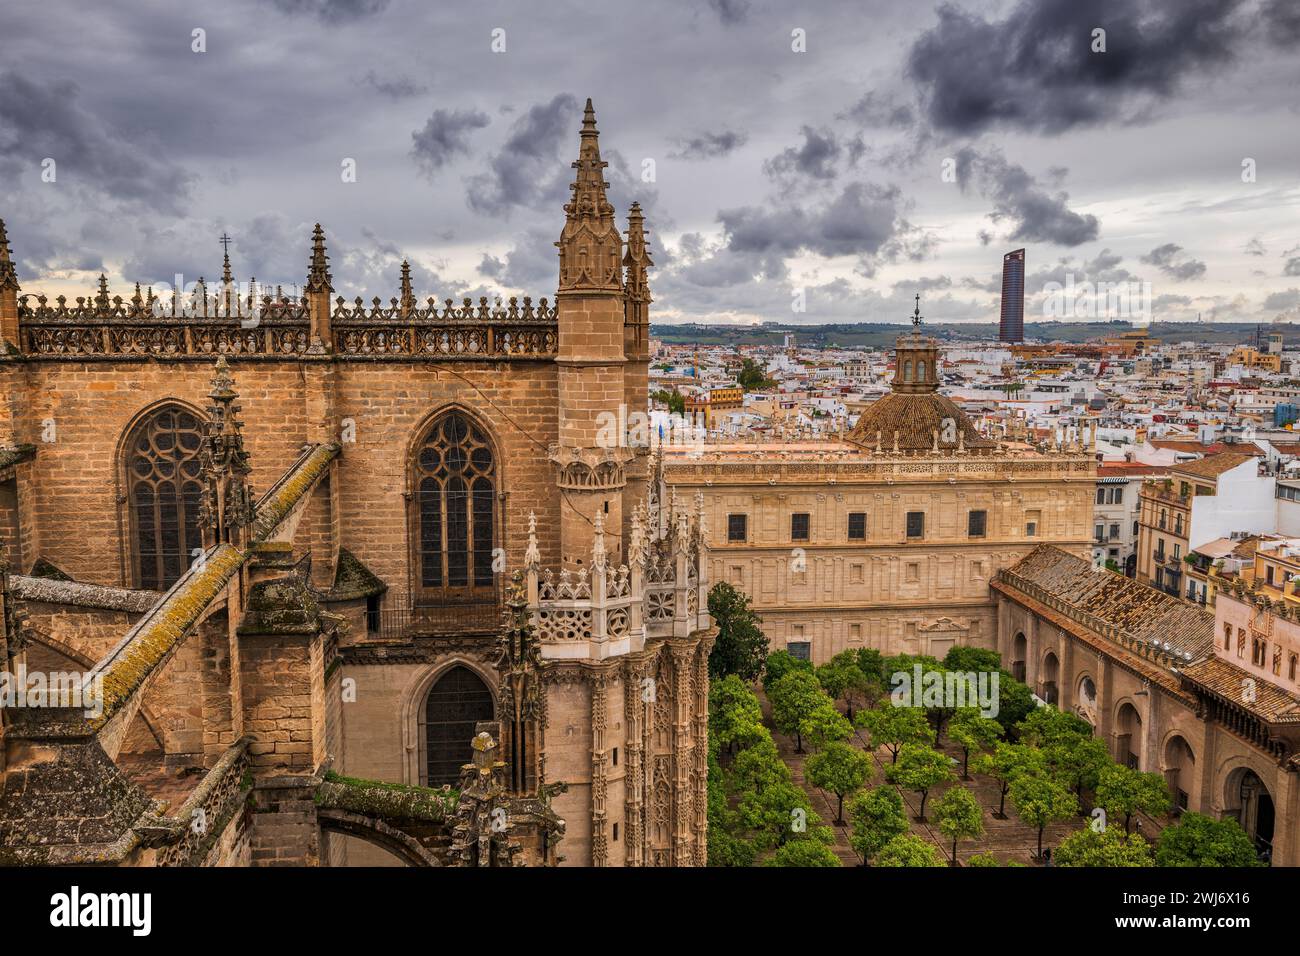 Catedral gótica de Sevilla con jardín de naranjos en la ciudad de Sevilla, Andalucía, España. Foto de stock